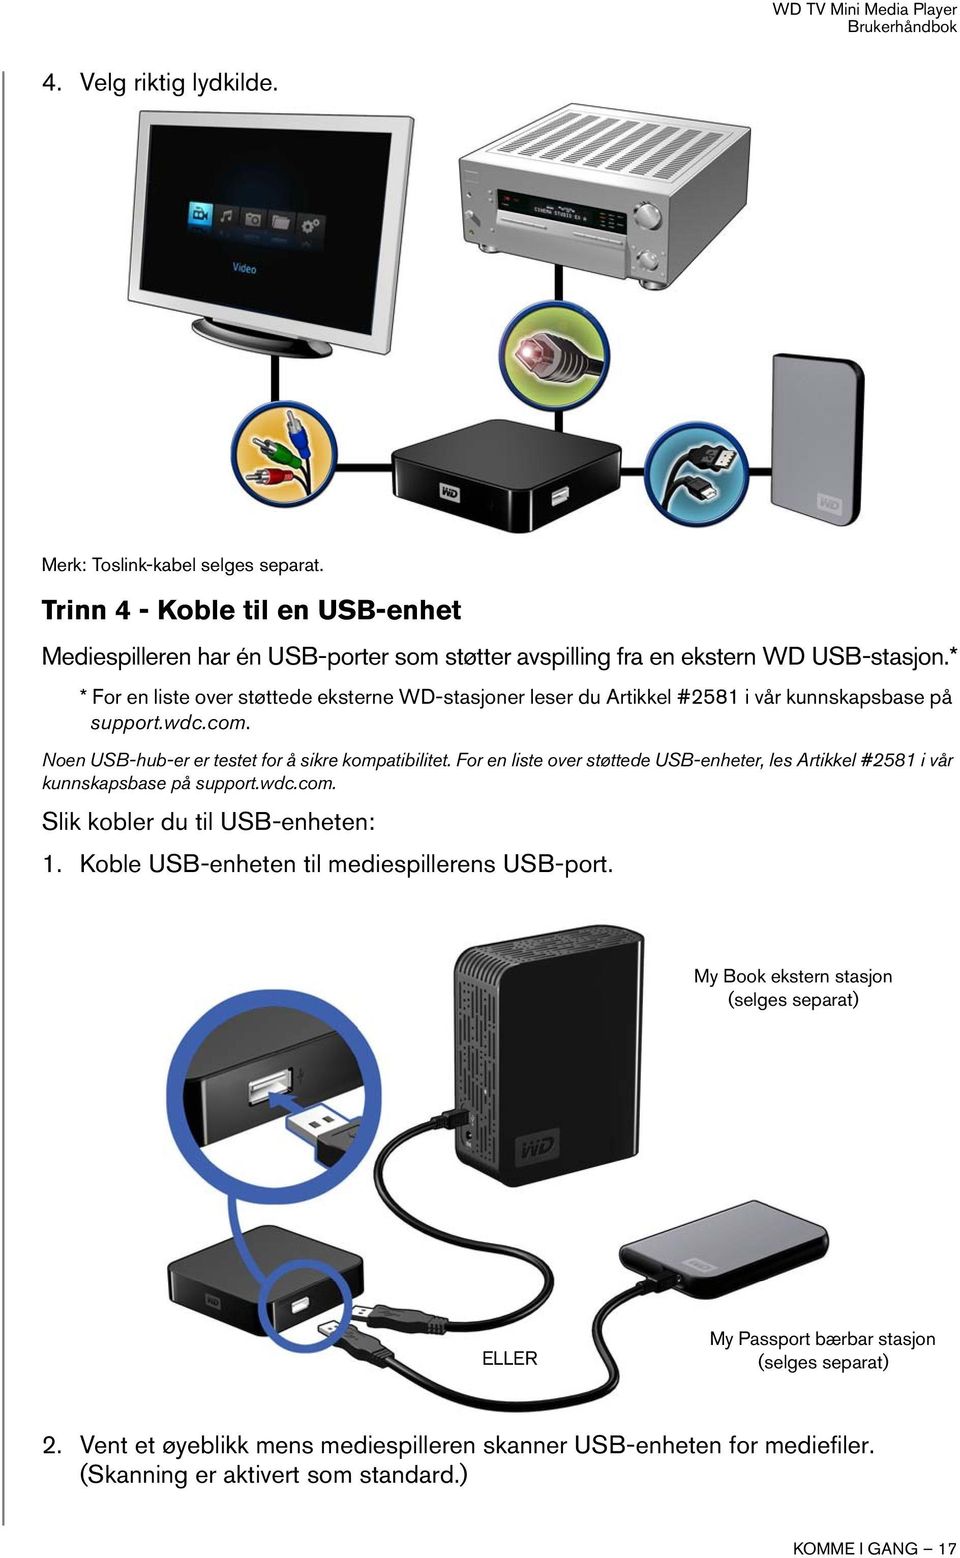 For en liste over støttede USB-enheter, les Artikkel #2581 i vår kunnskapsbase på support.wdc.com. Slik kobler du til USB-enheten: 1. Koble USB-enheten til mediespillerens USB-port.